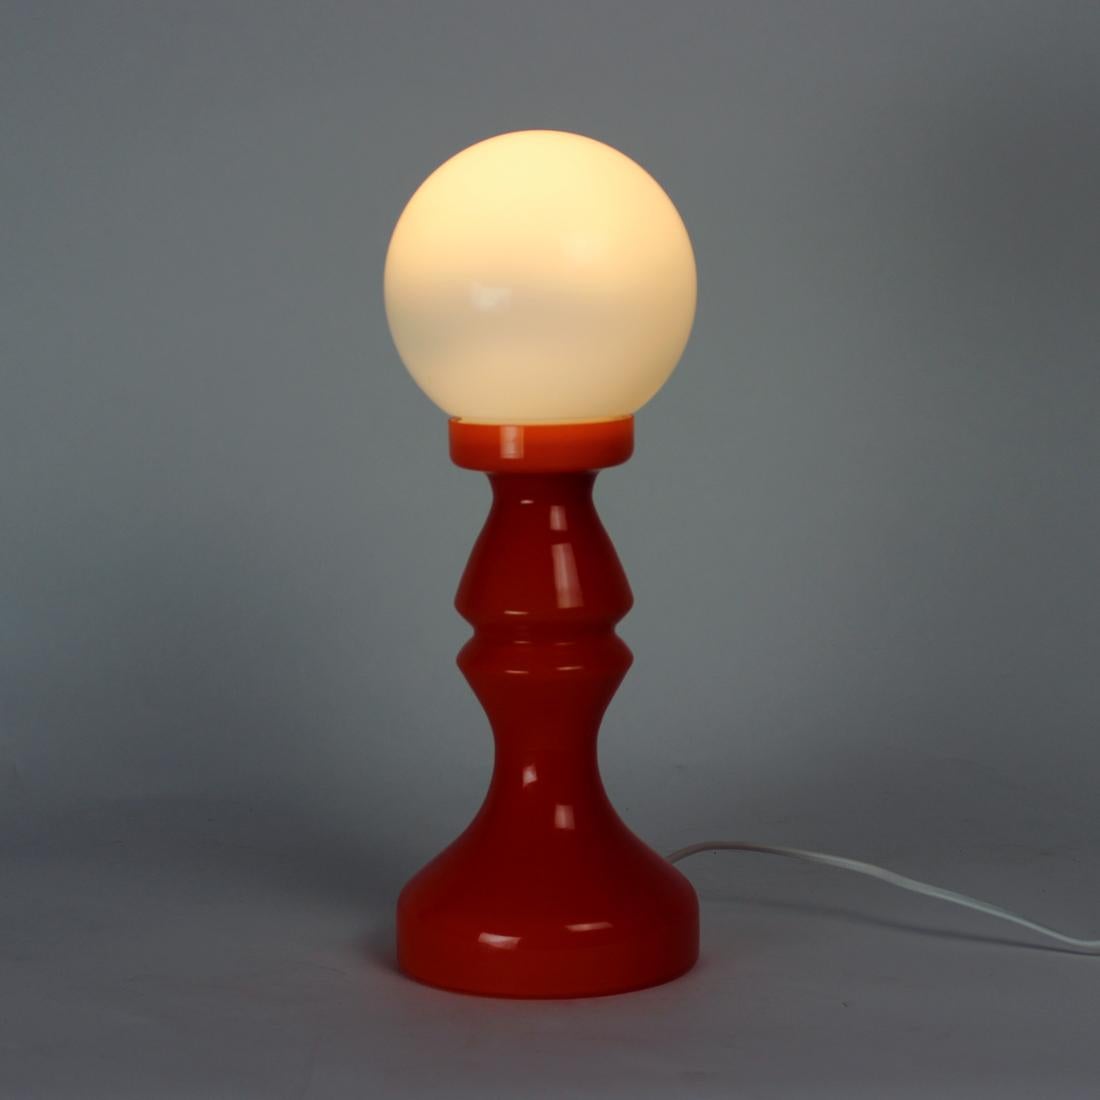 Unique Orange Glass Table Lamp by Vitropol, Poland, 1960s For Sale 4